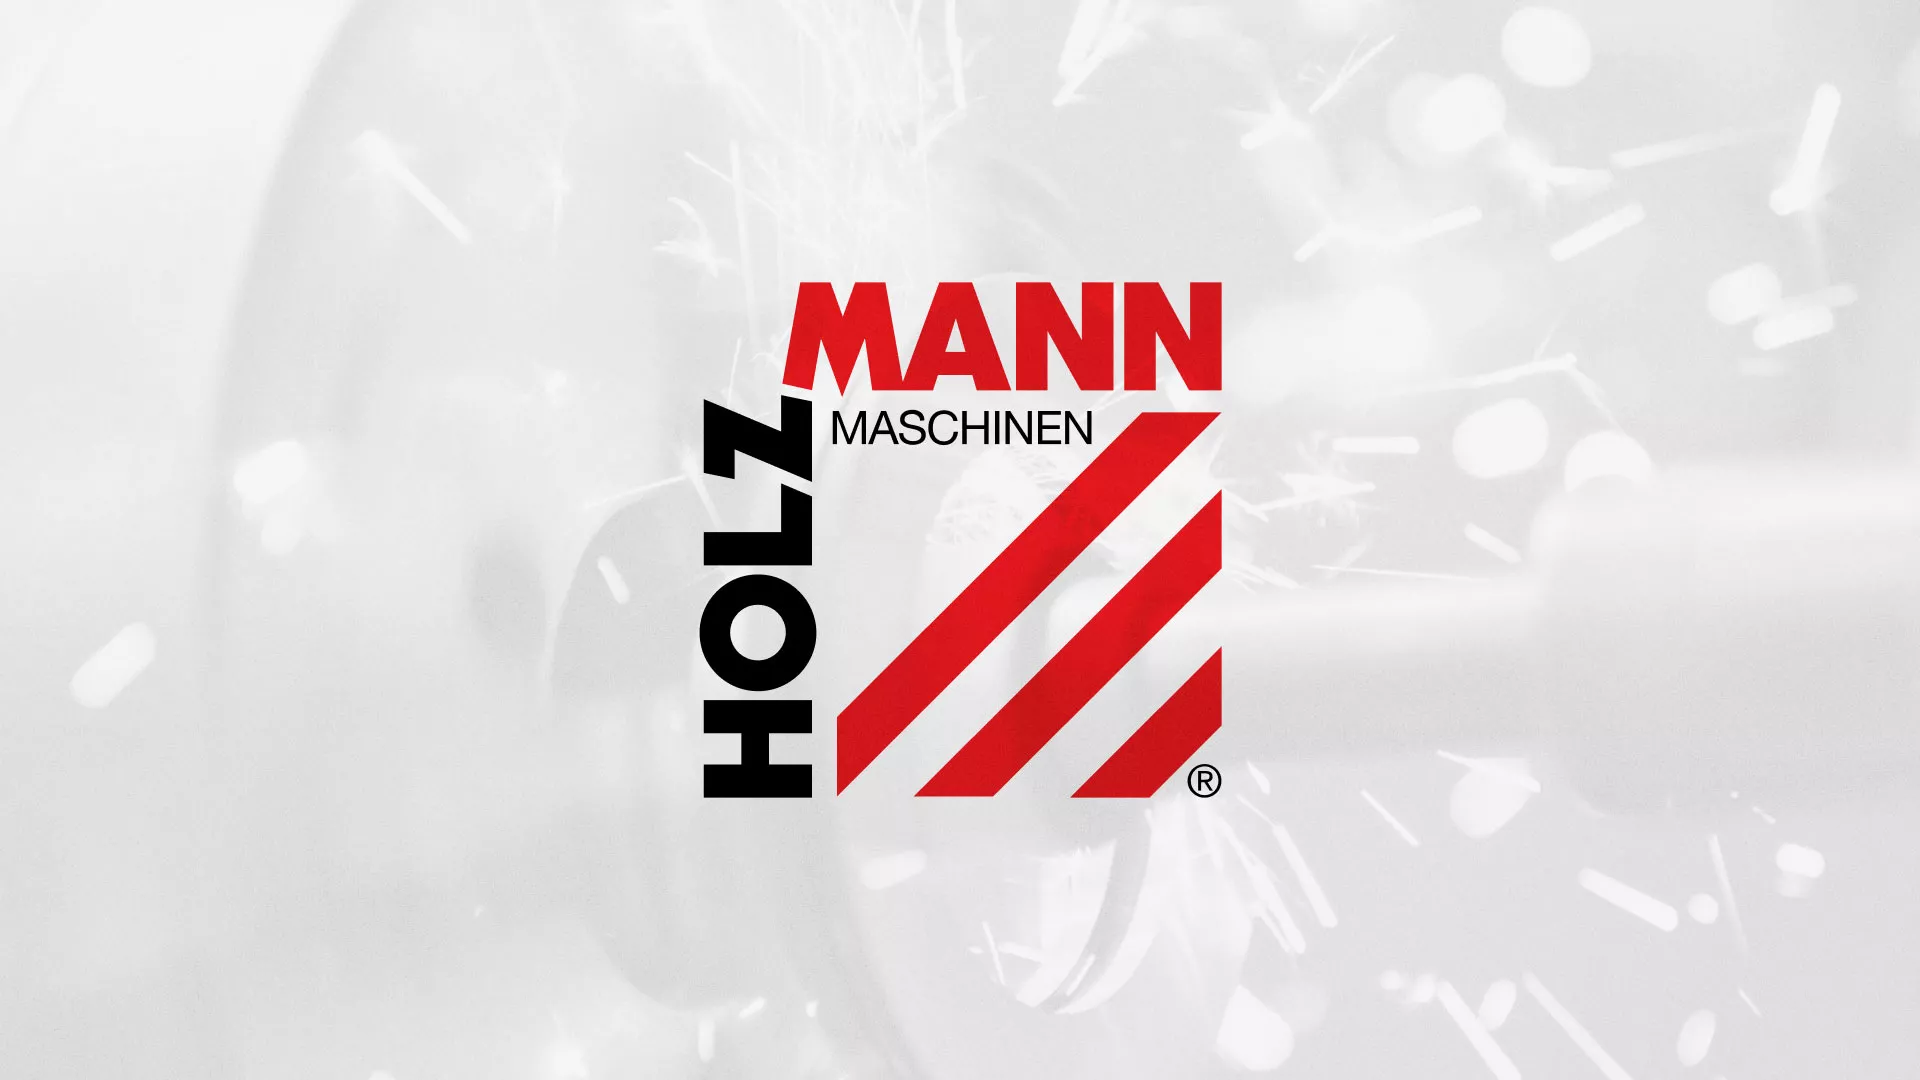 Создание сайта компании «HOLZMANN Maschinen GmbH» в Первоуральске